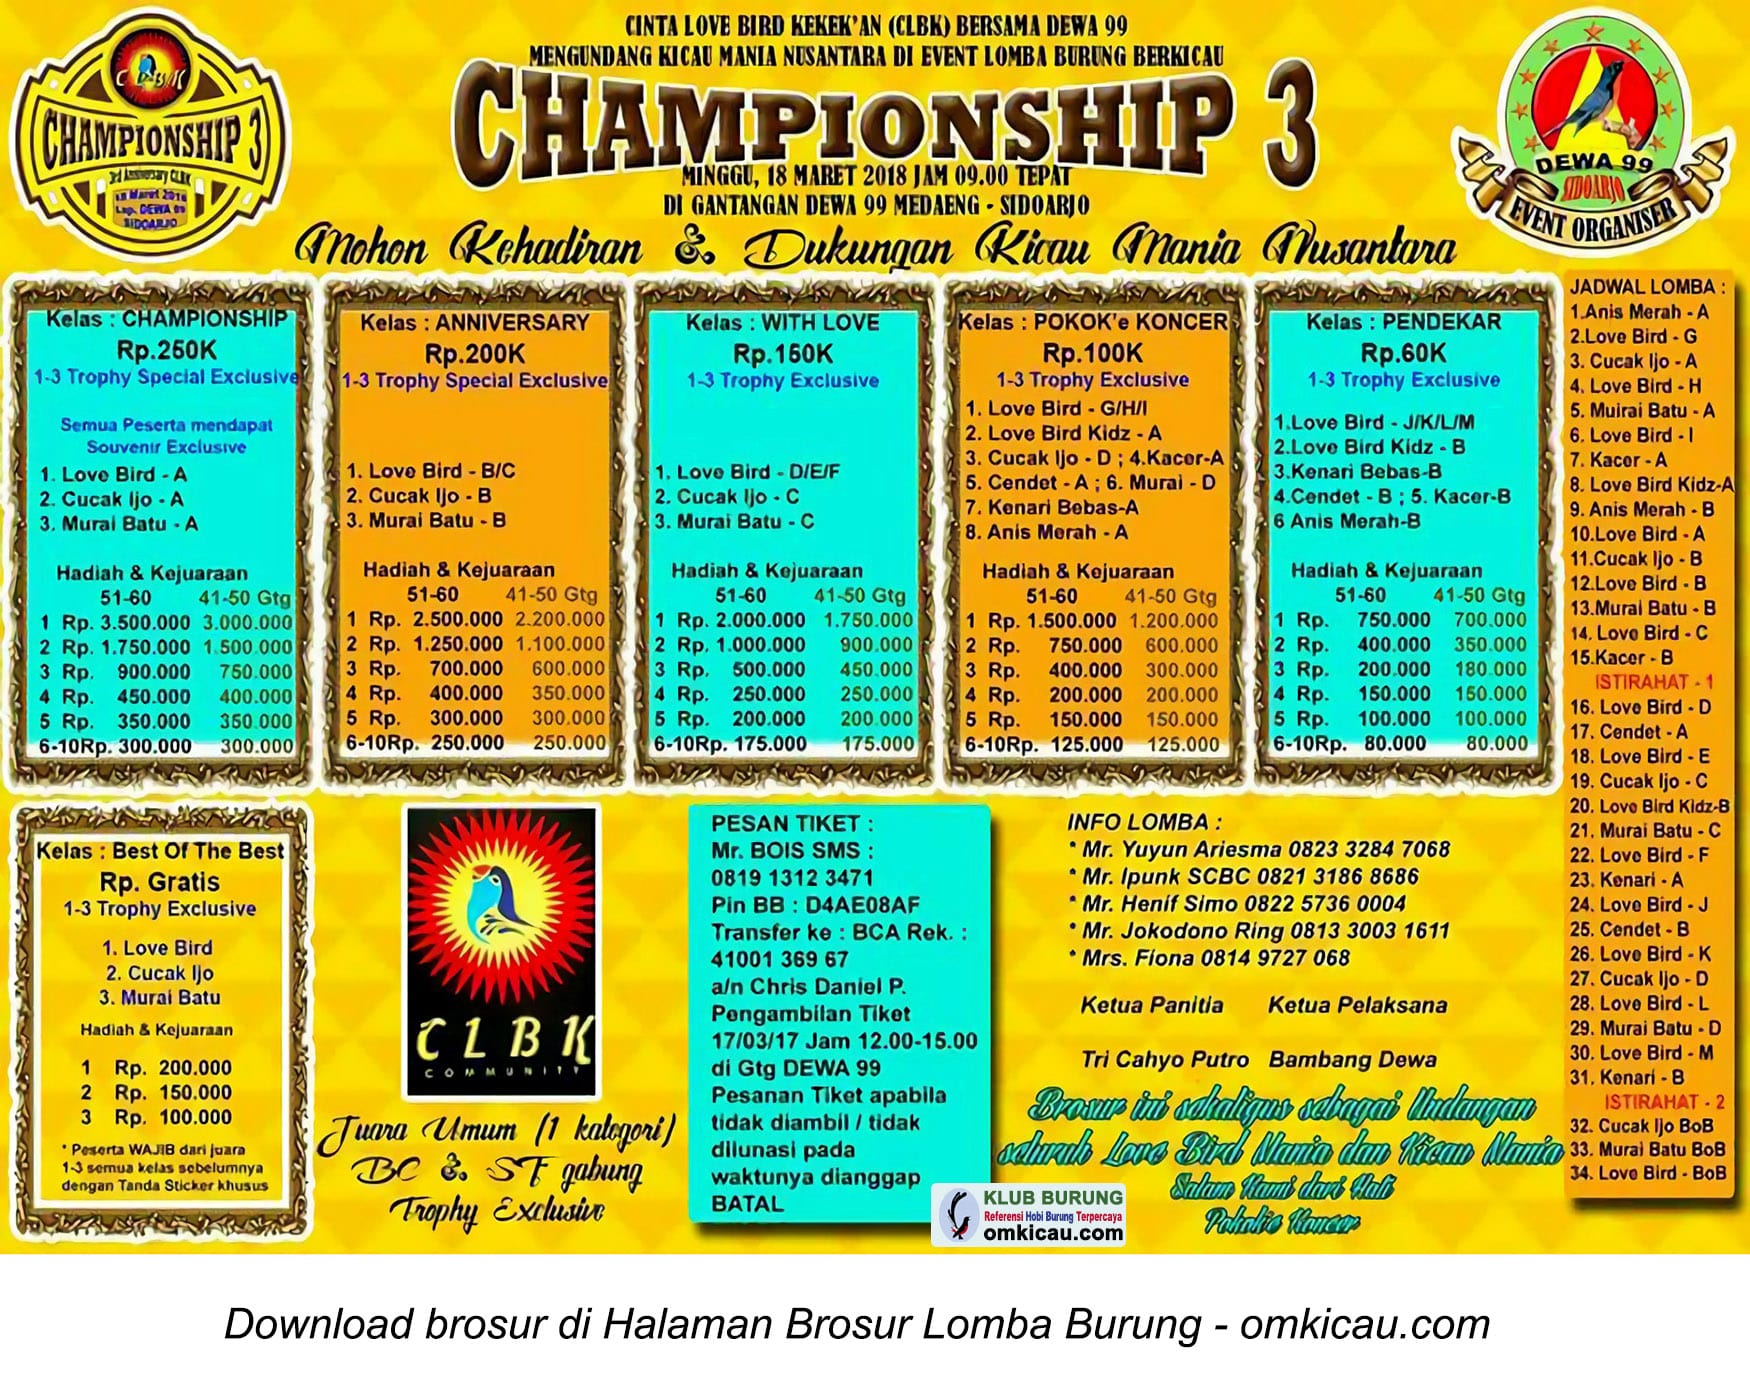 Championship 3